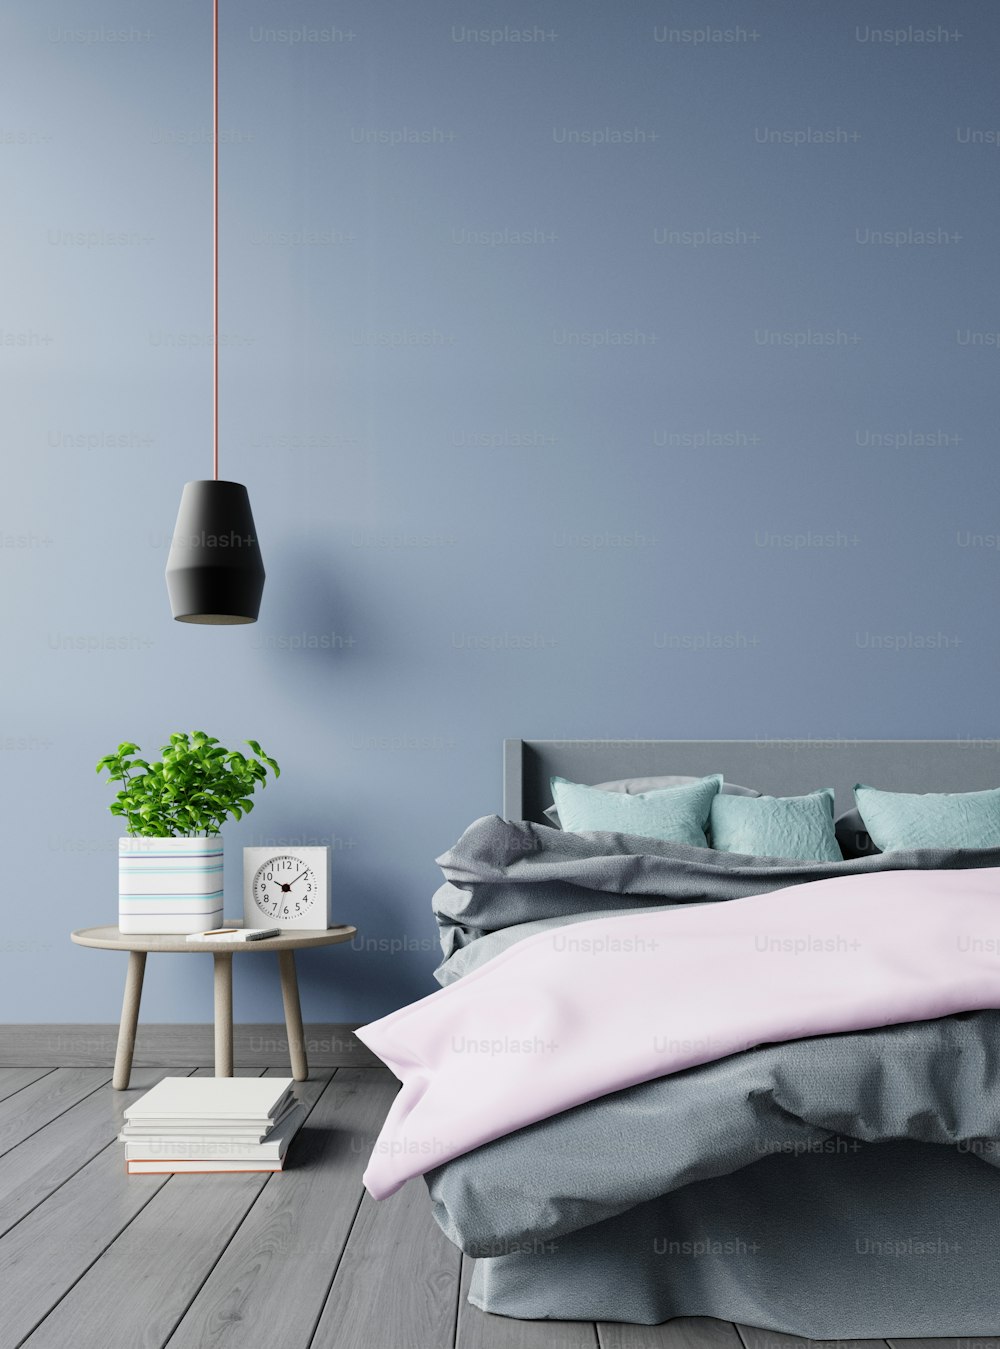 침대 램프와 어두운 벽 배경에 녹색 식물이 있는 침실 인테리어, 3d 렌더링.